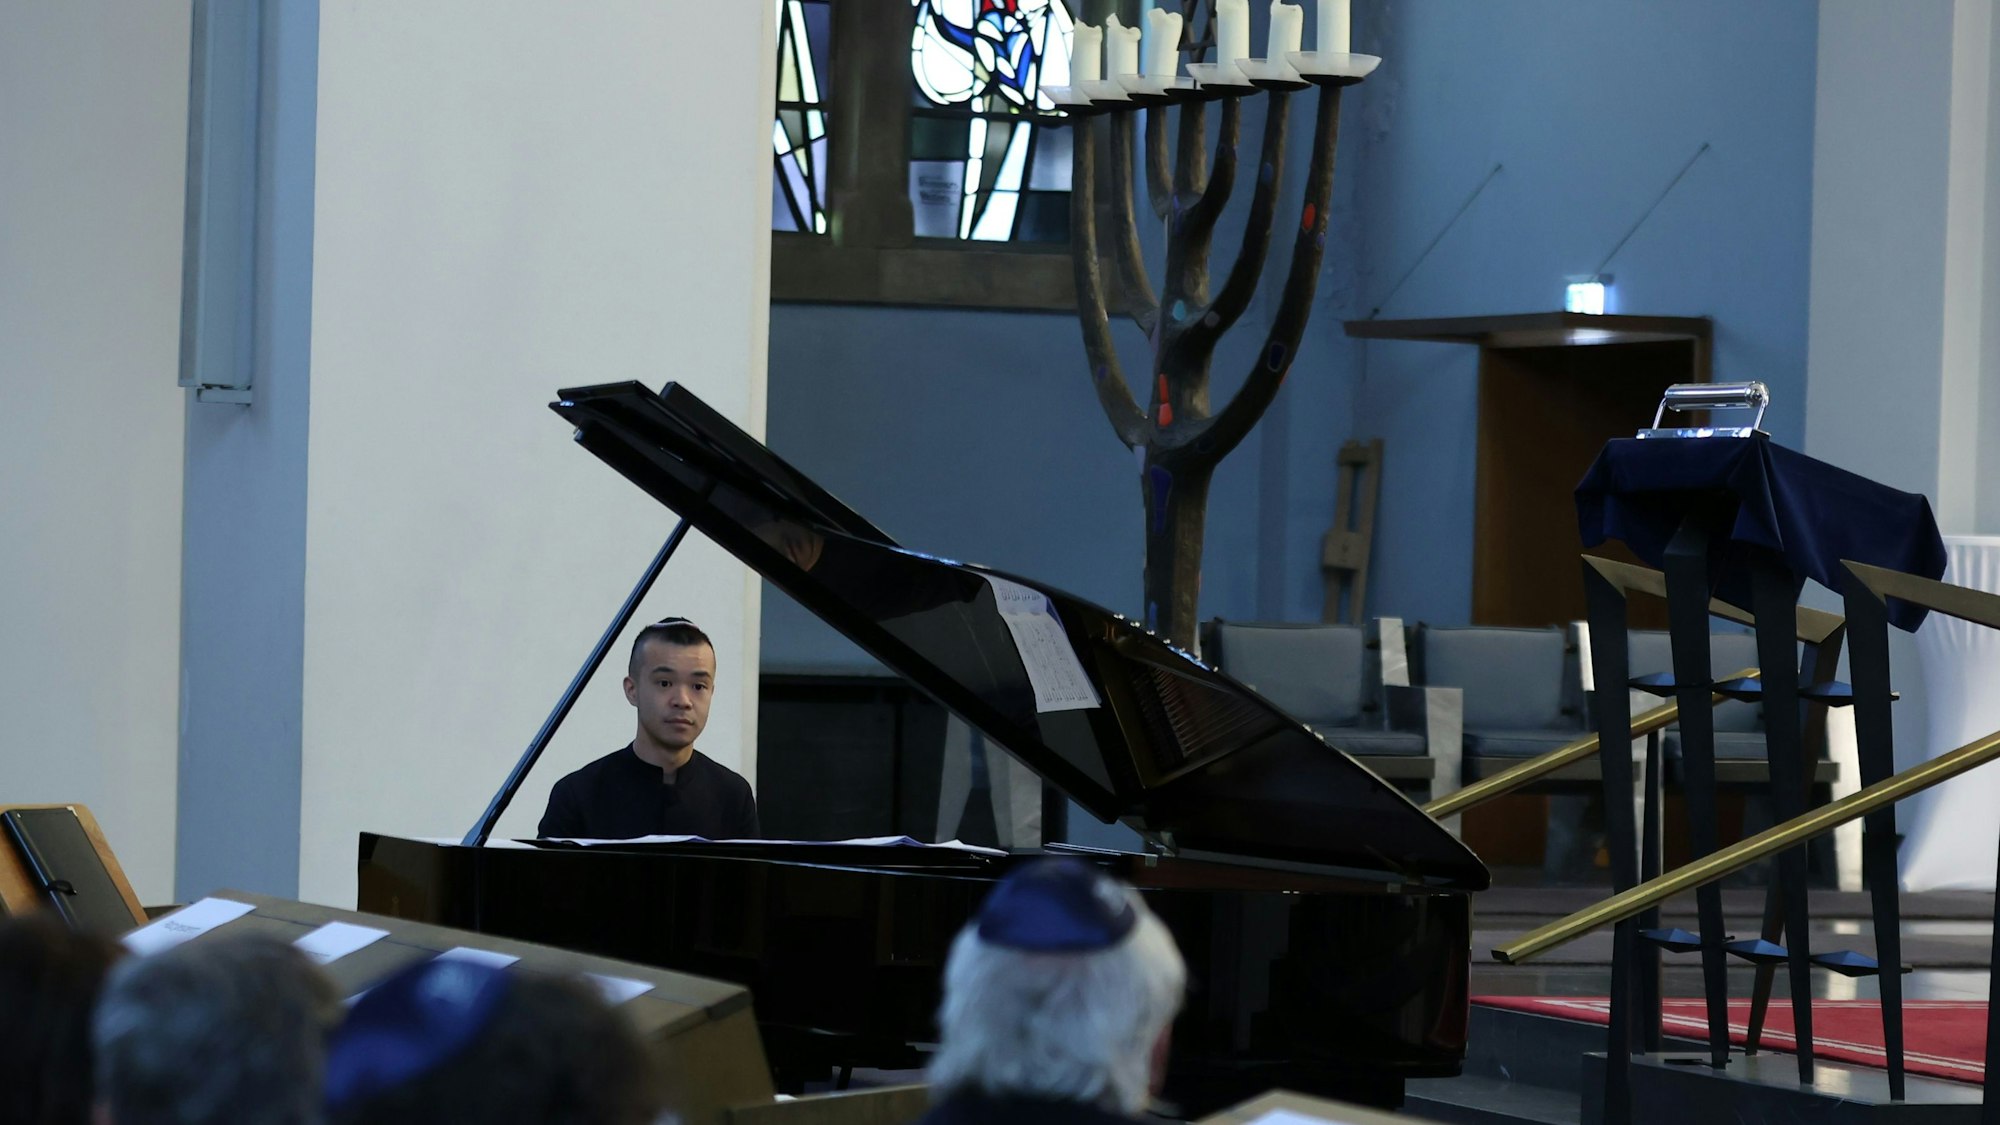 Ein Mann am Piano in einer Synagoge